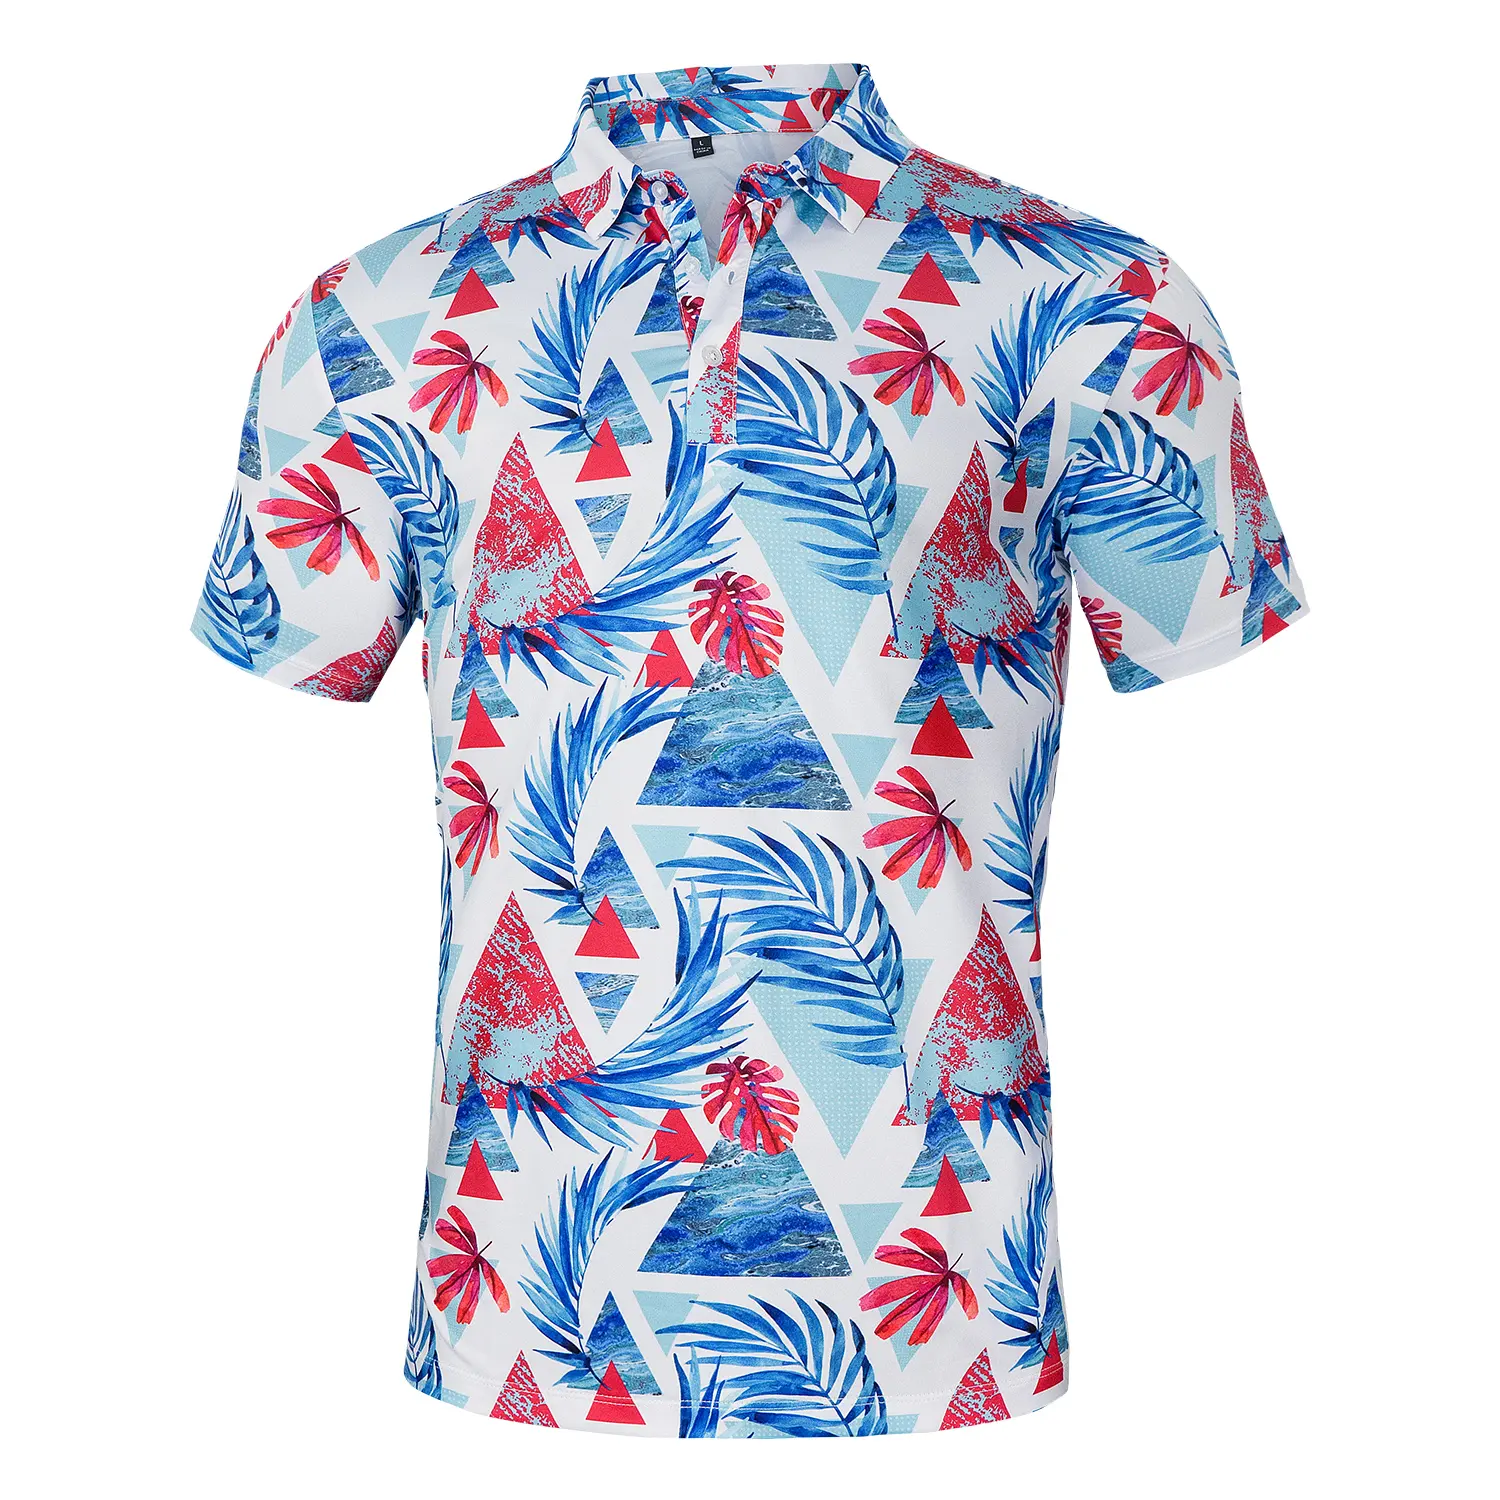 Мужская модная бабочка с рисунком, рубашка-поло для гольфа мяч футболки с коротким рукавом на каждый день для игры в гольф топы Одежда для лета